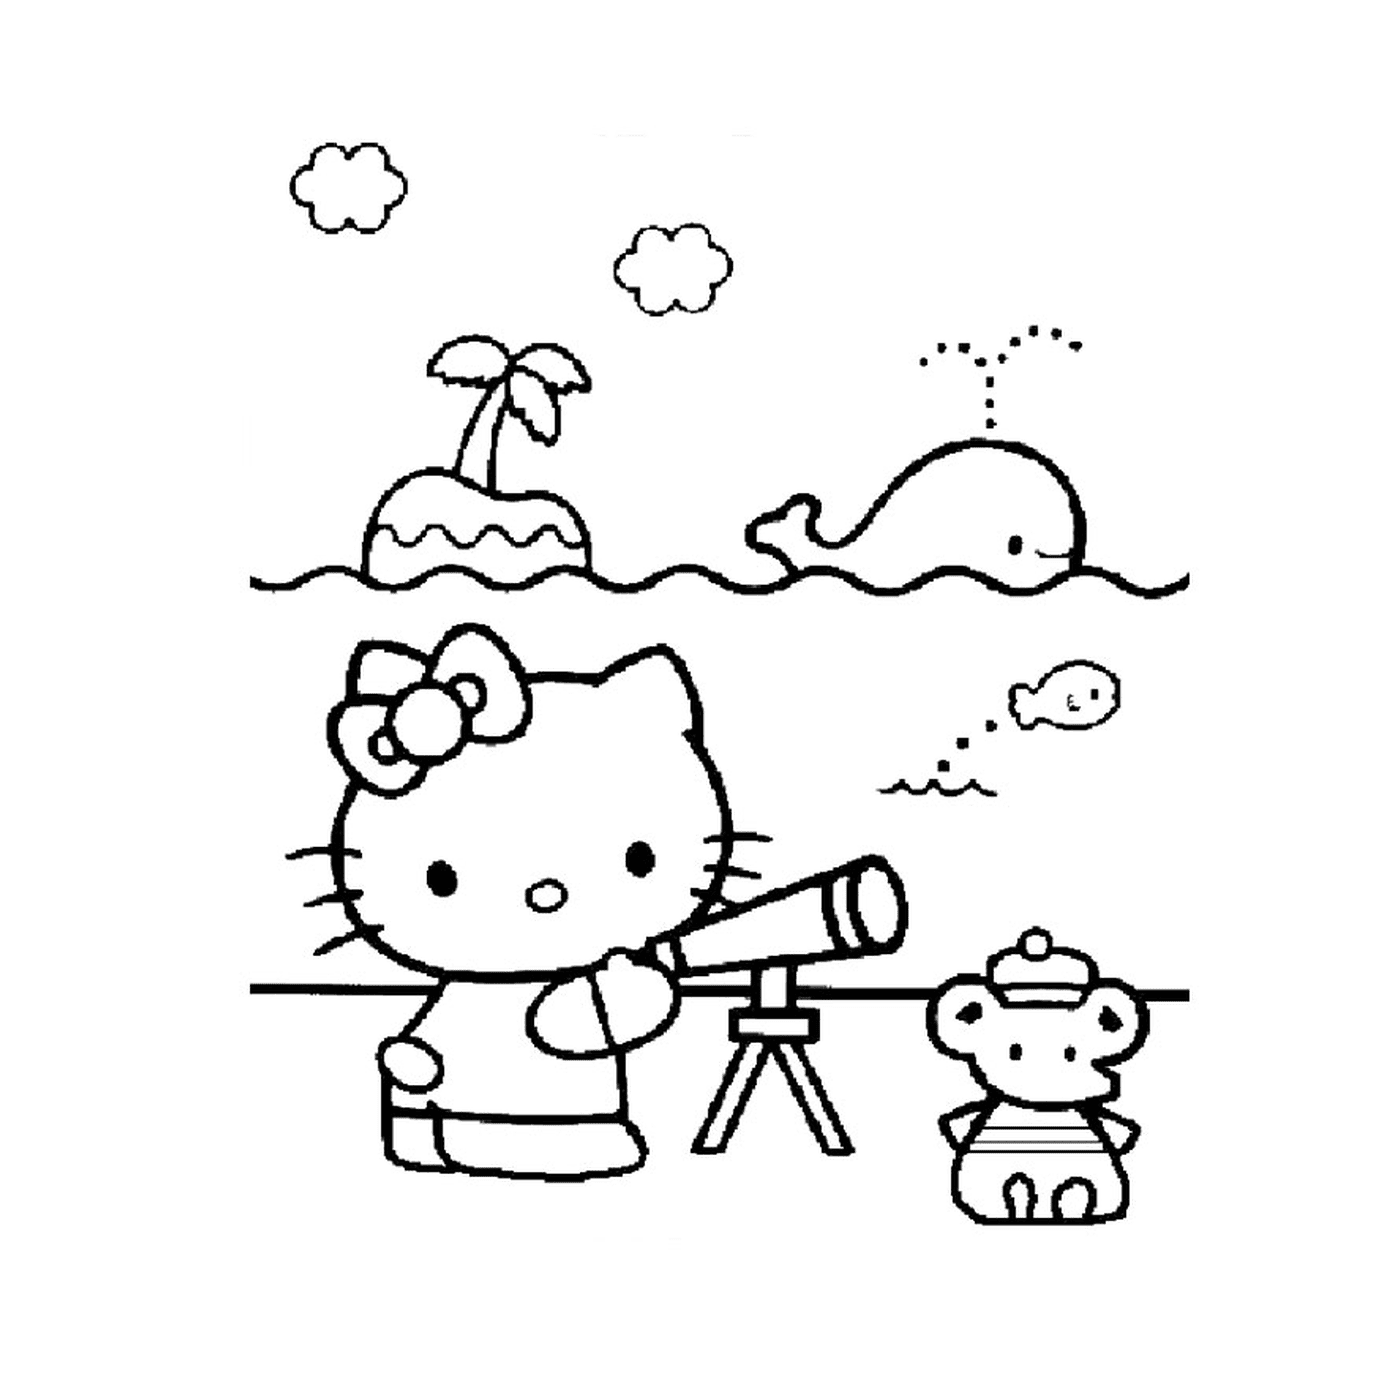  Palmier, Hello Kitty, telescopio, orsacchiotto 